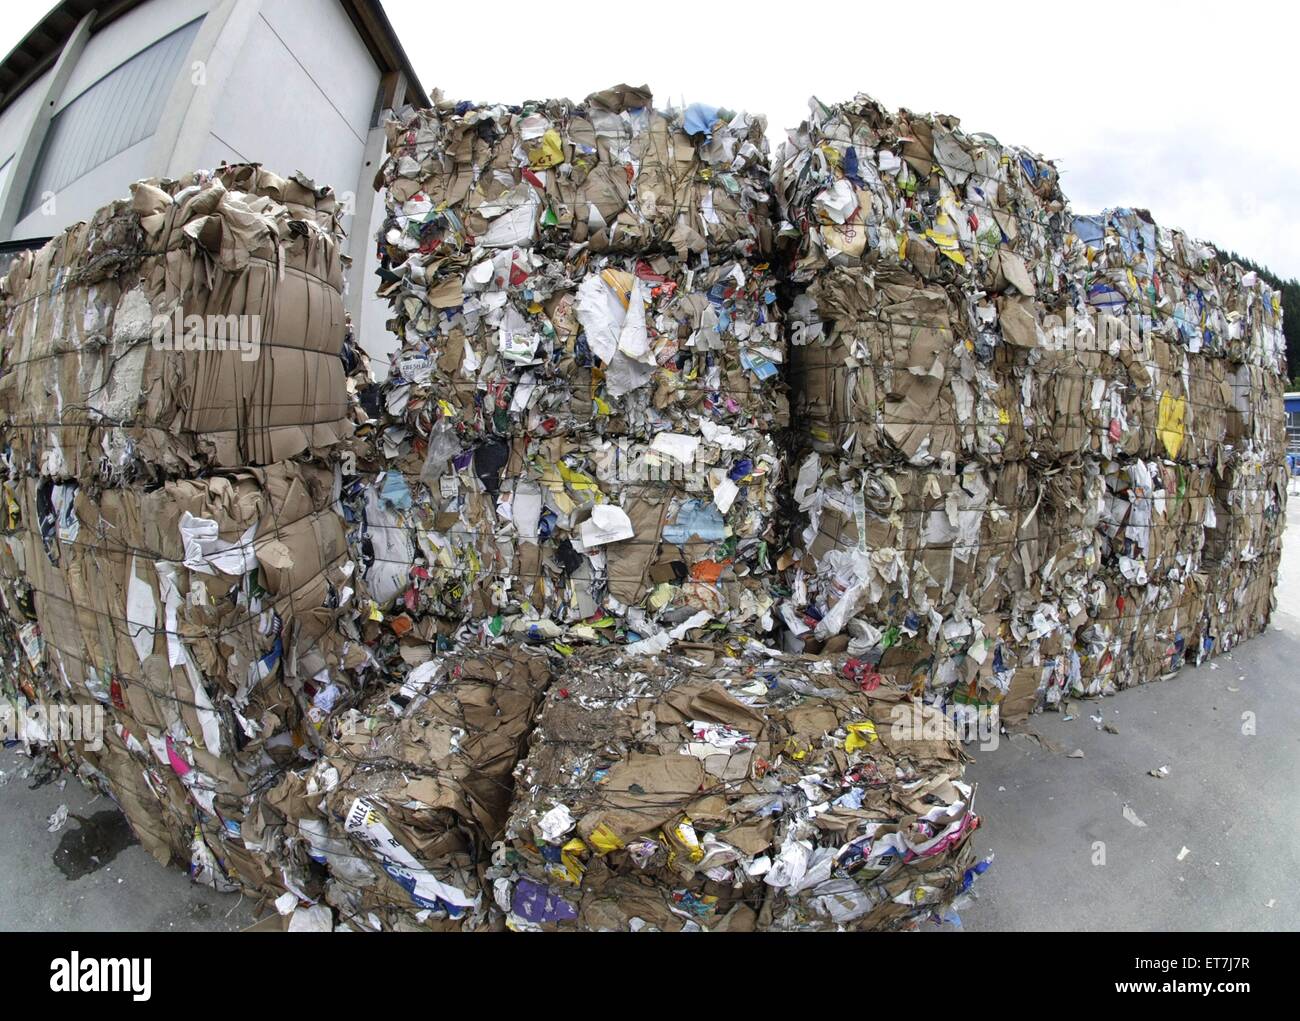 Altpapierballen auf einer Muellhalde | waste paper on a waste disposal  Stock Photo - Alamy